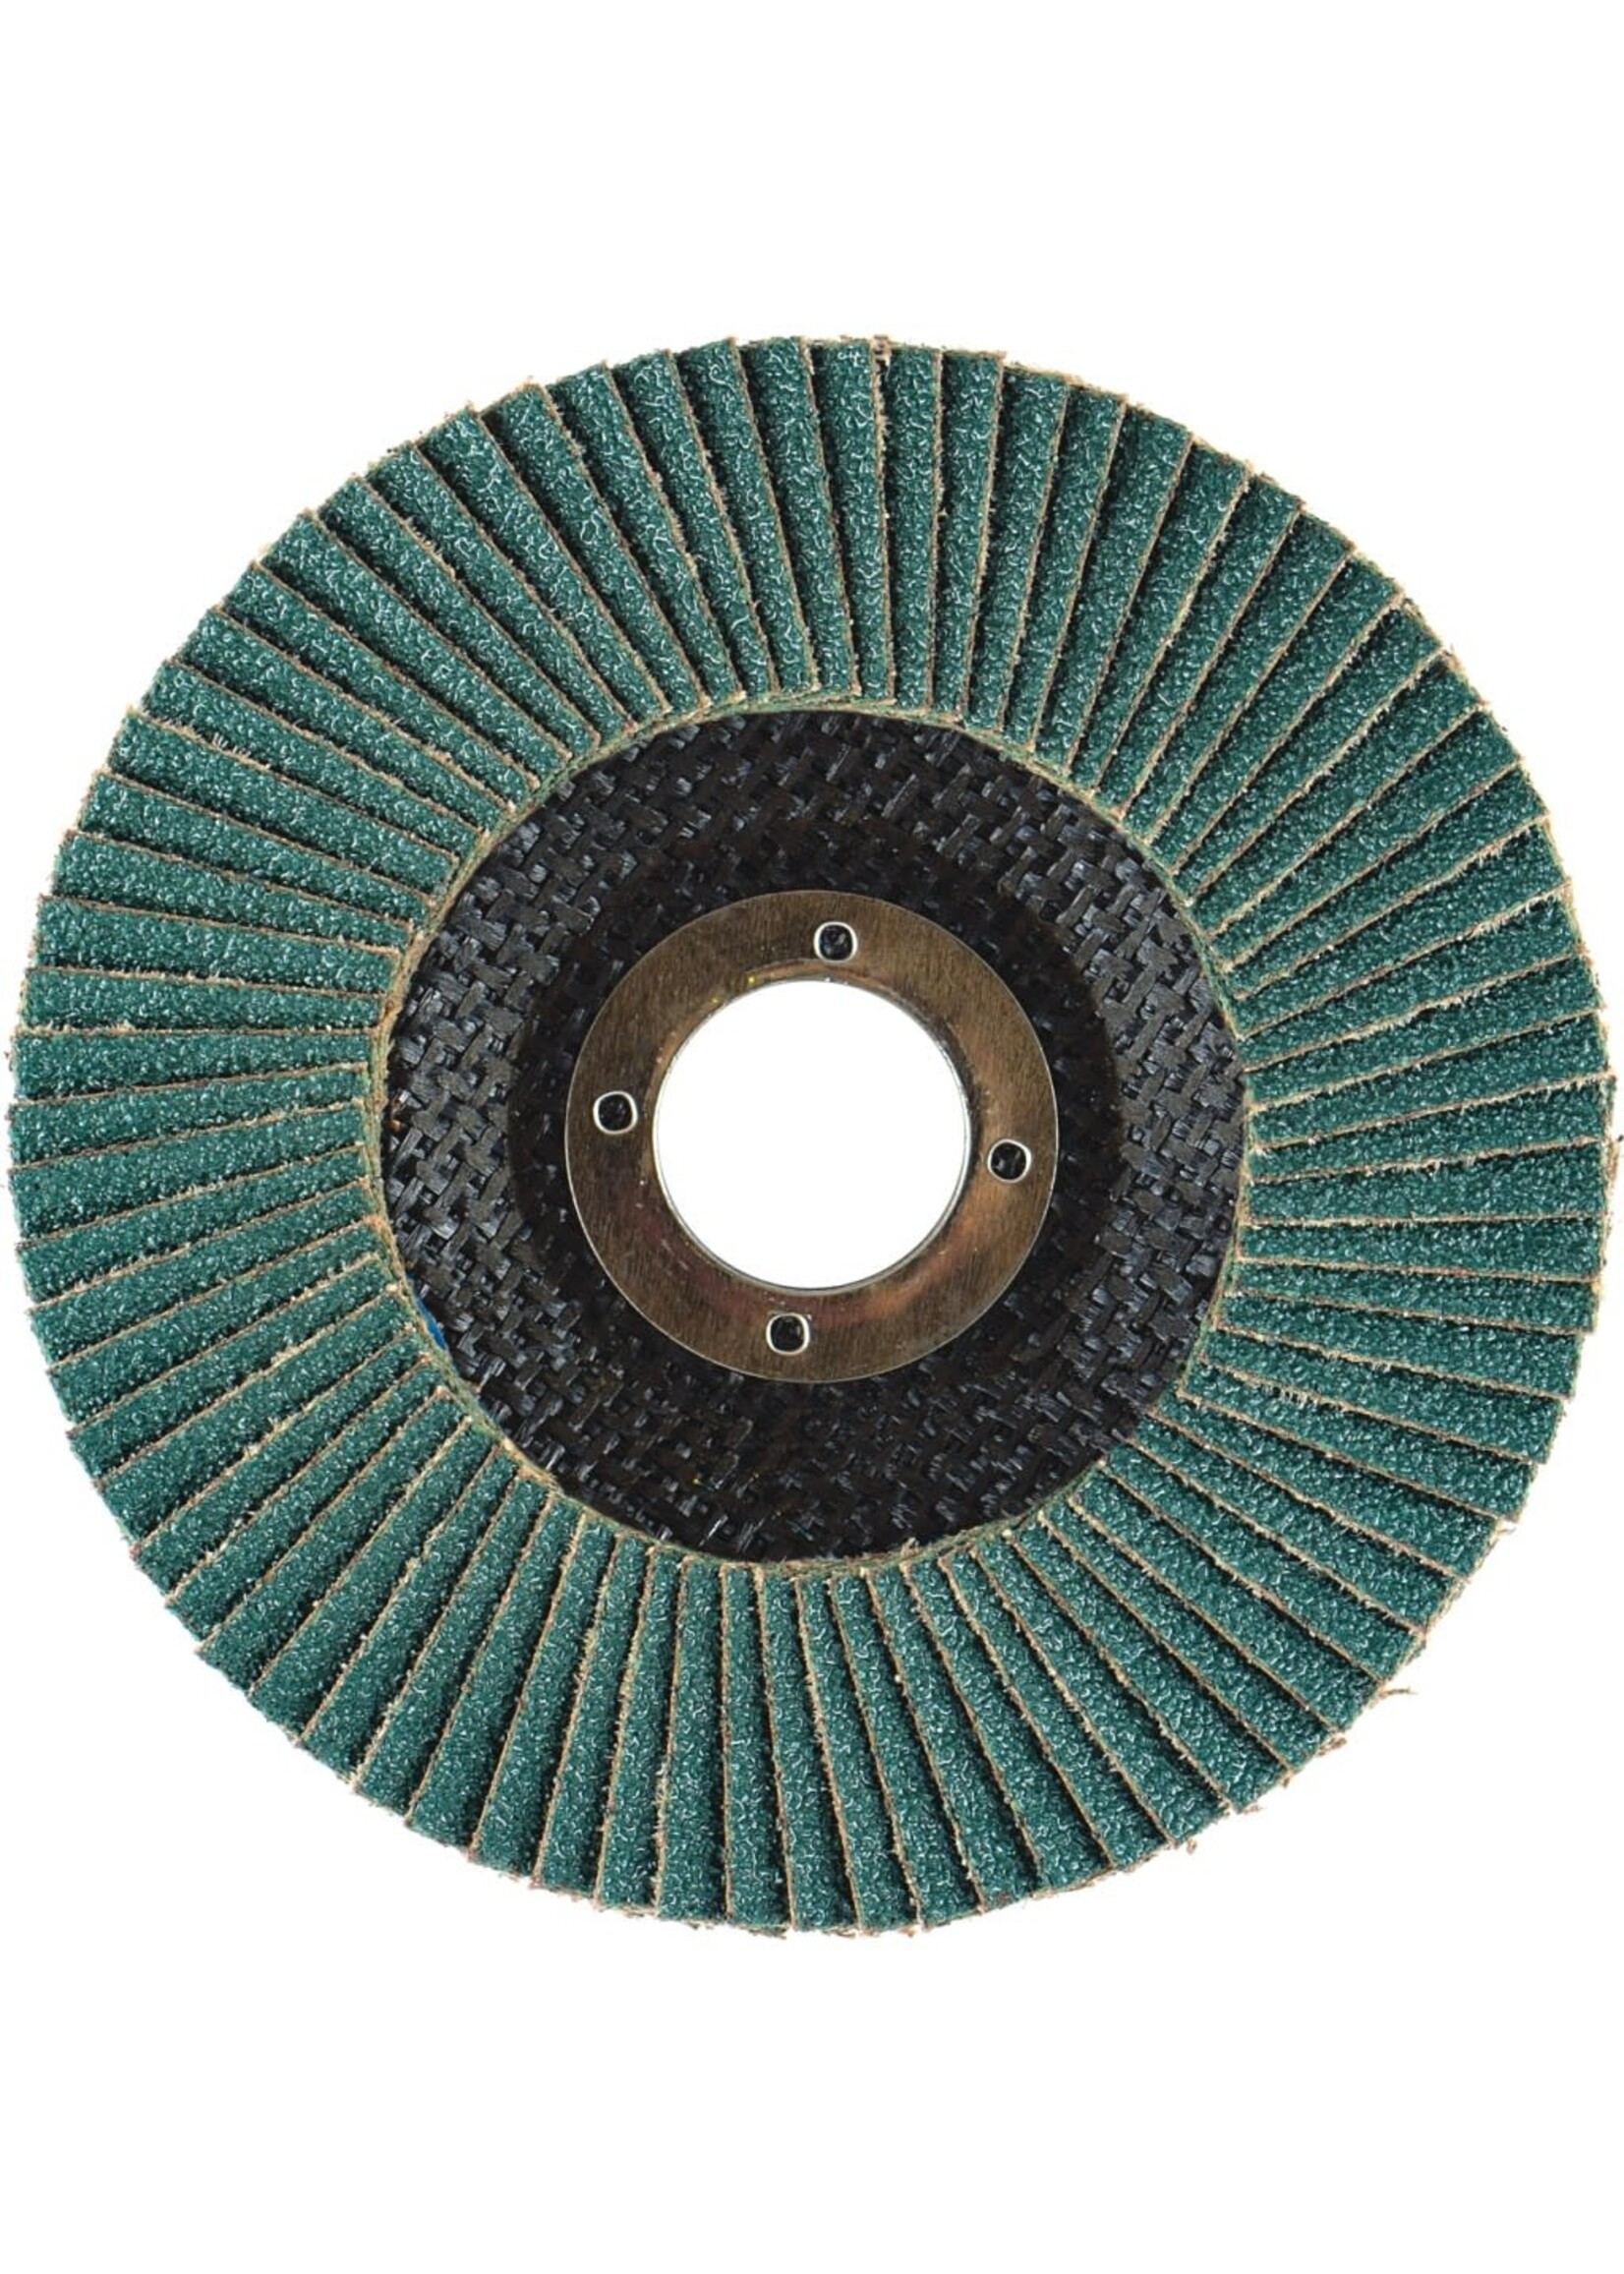 Arc Abrasive 4.5" 40 Grit High Density Flap Disk